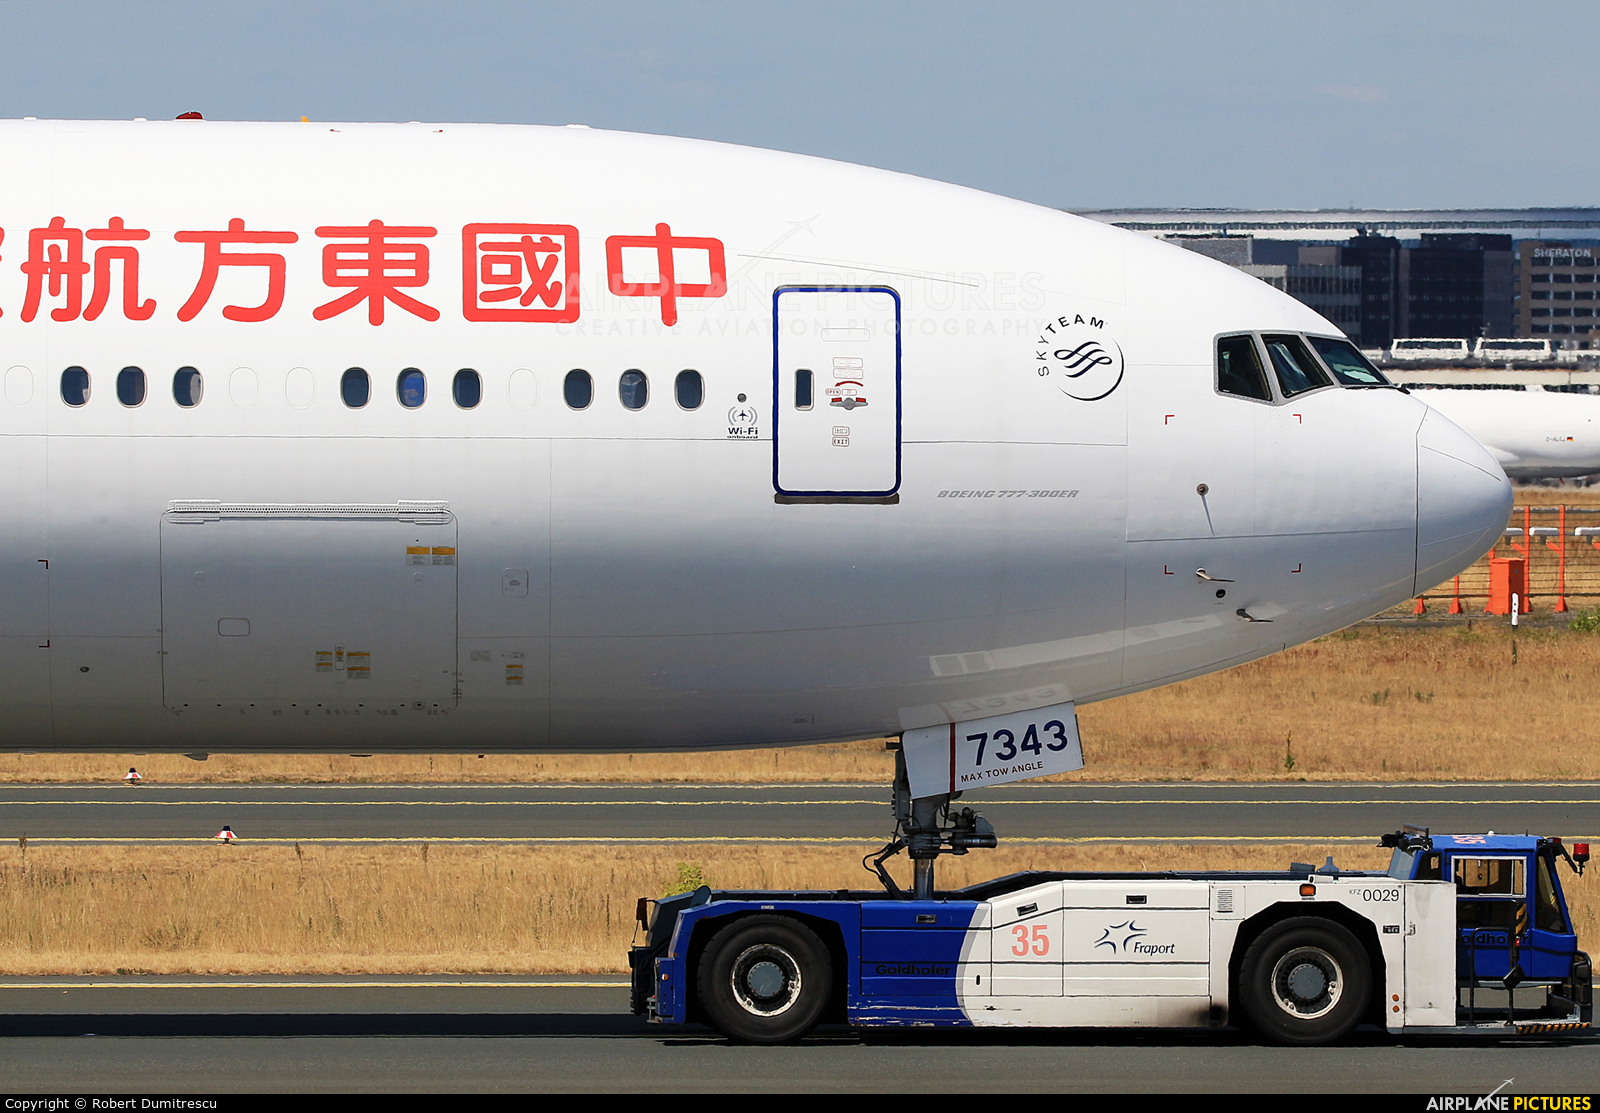 China Eastern Airlines B-7343 aircraft at Frankfurt